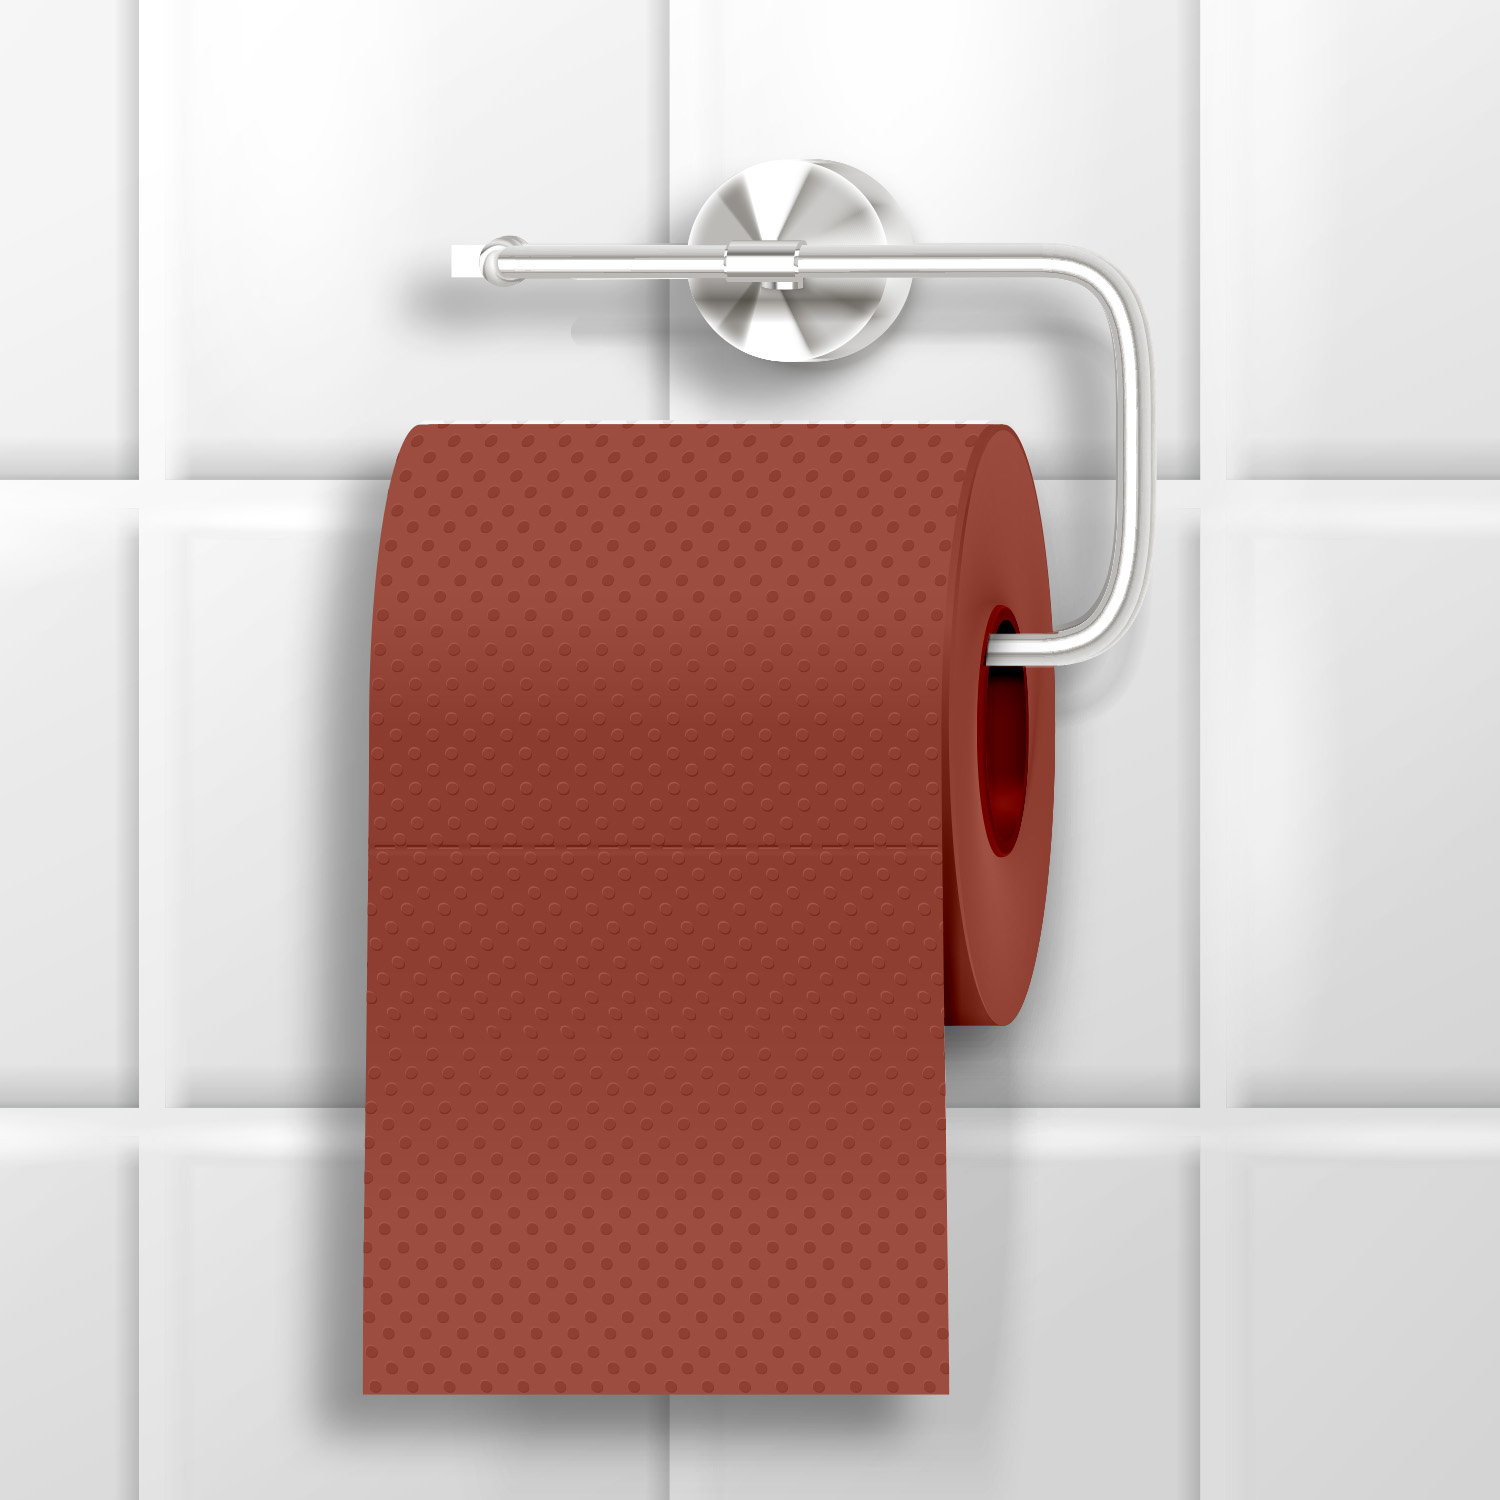 Mad Monkey - Toilettenpapier im Schleifpapier-Design